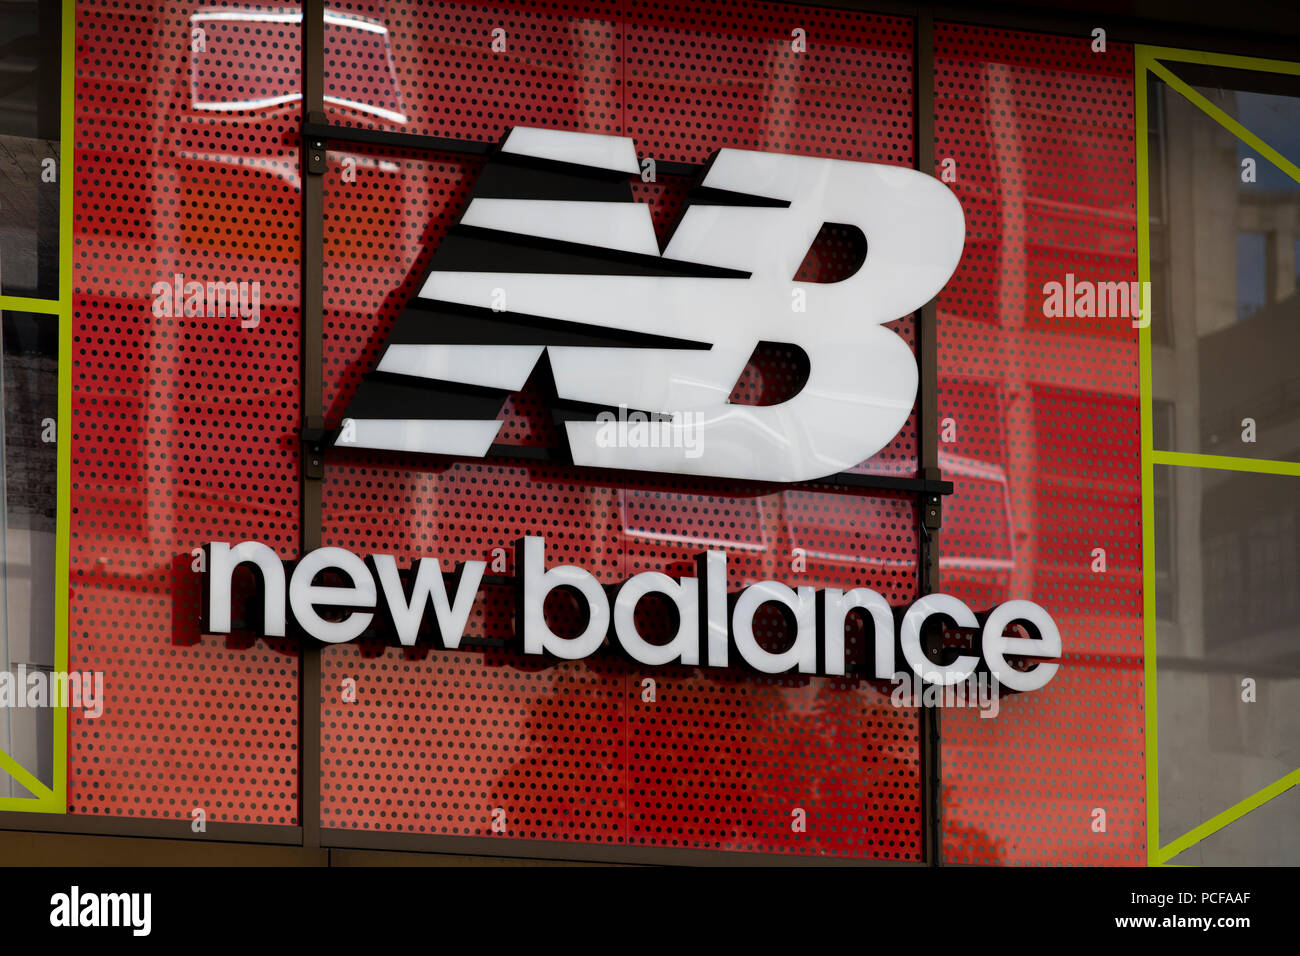 New Balance Trainers Banque d'image et photos - Alamy